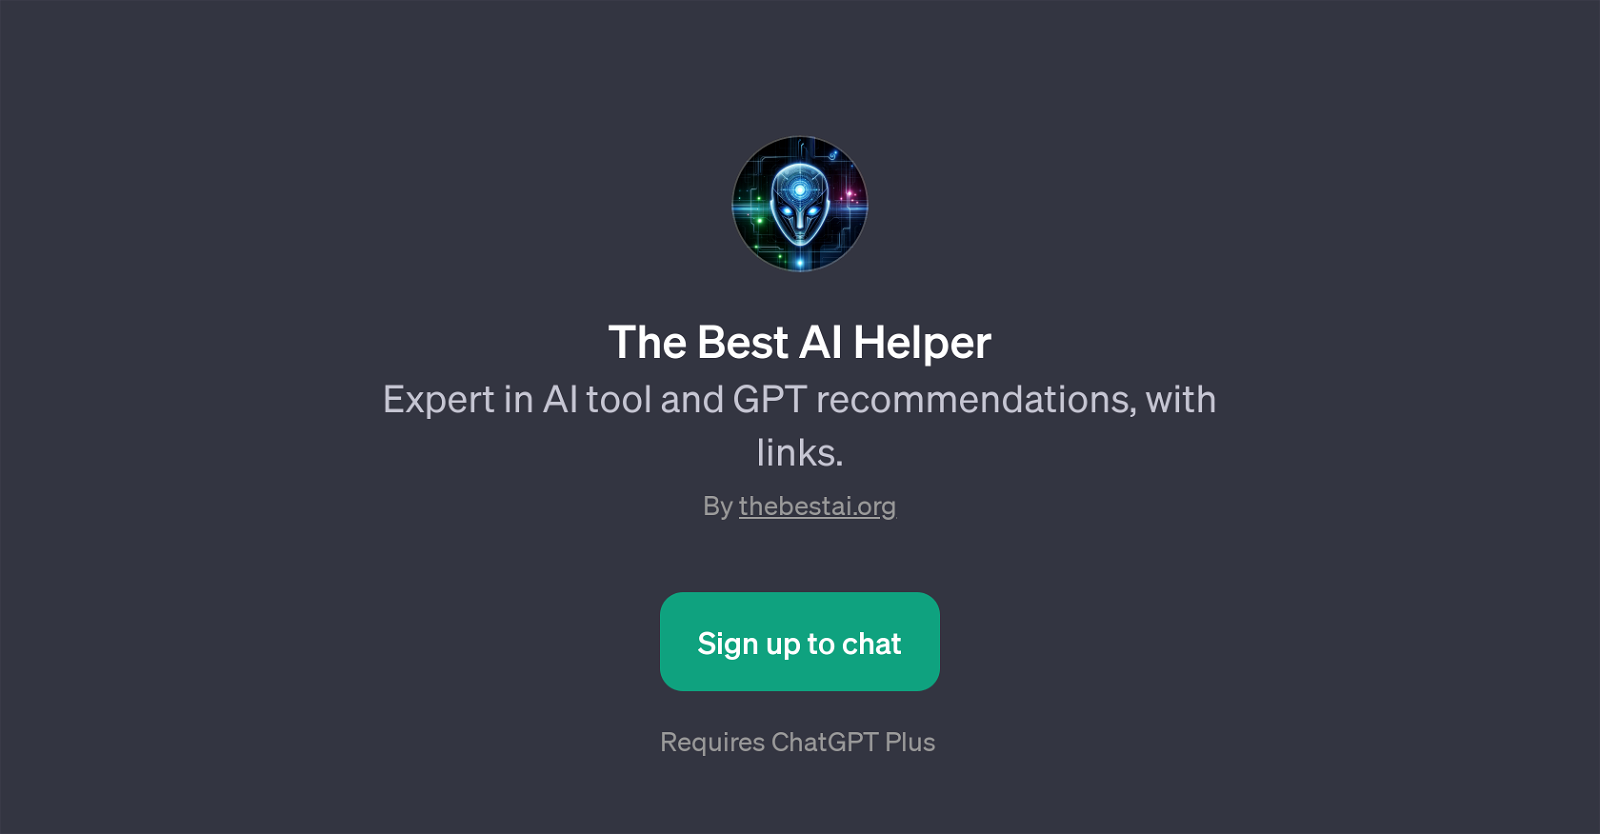 The Best AI Helper website